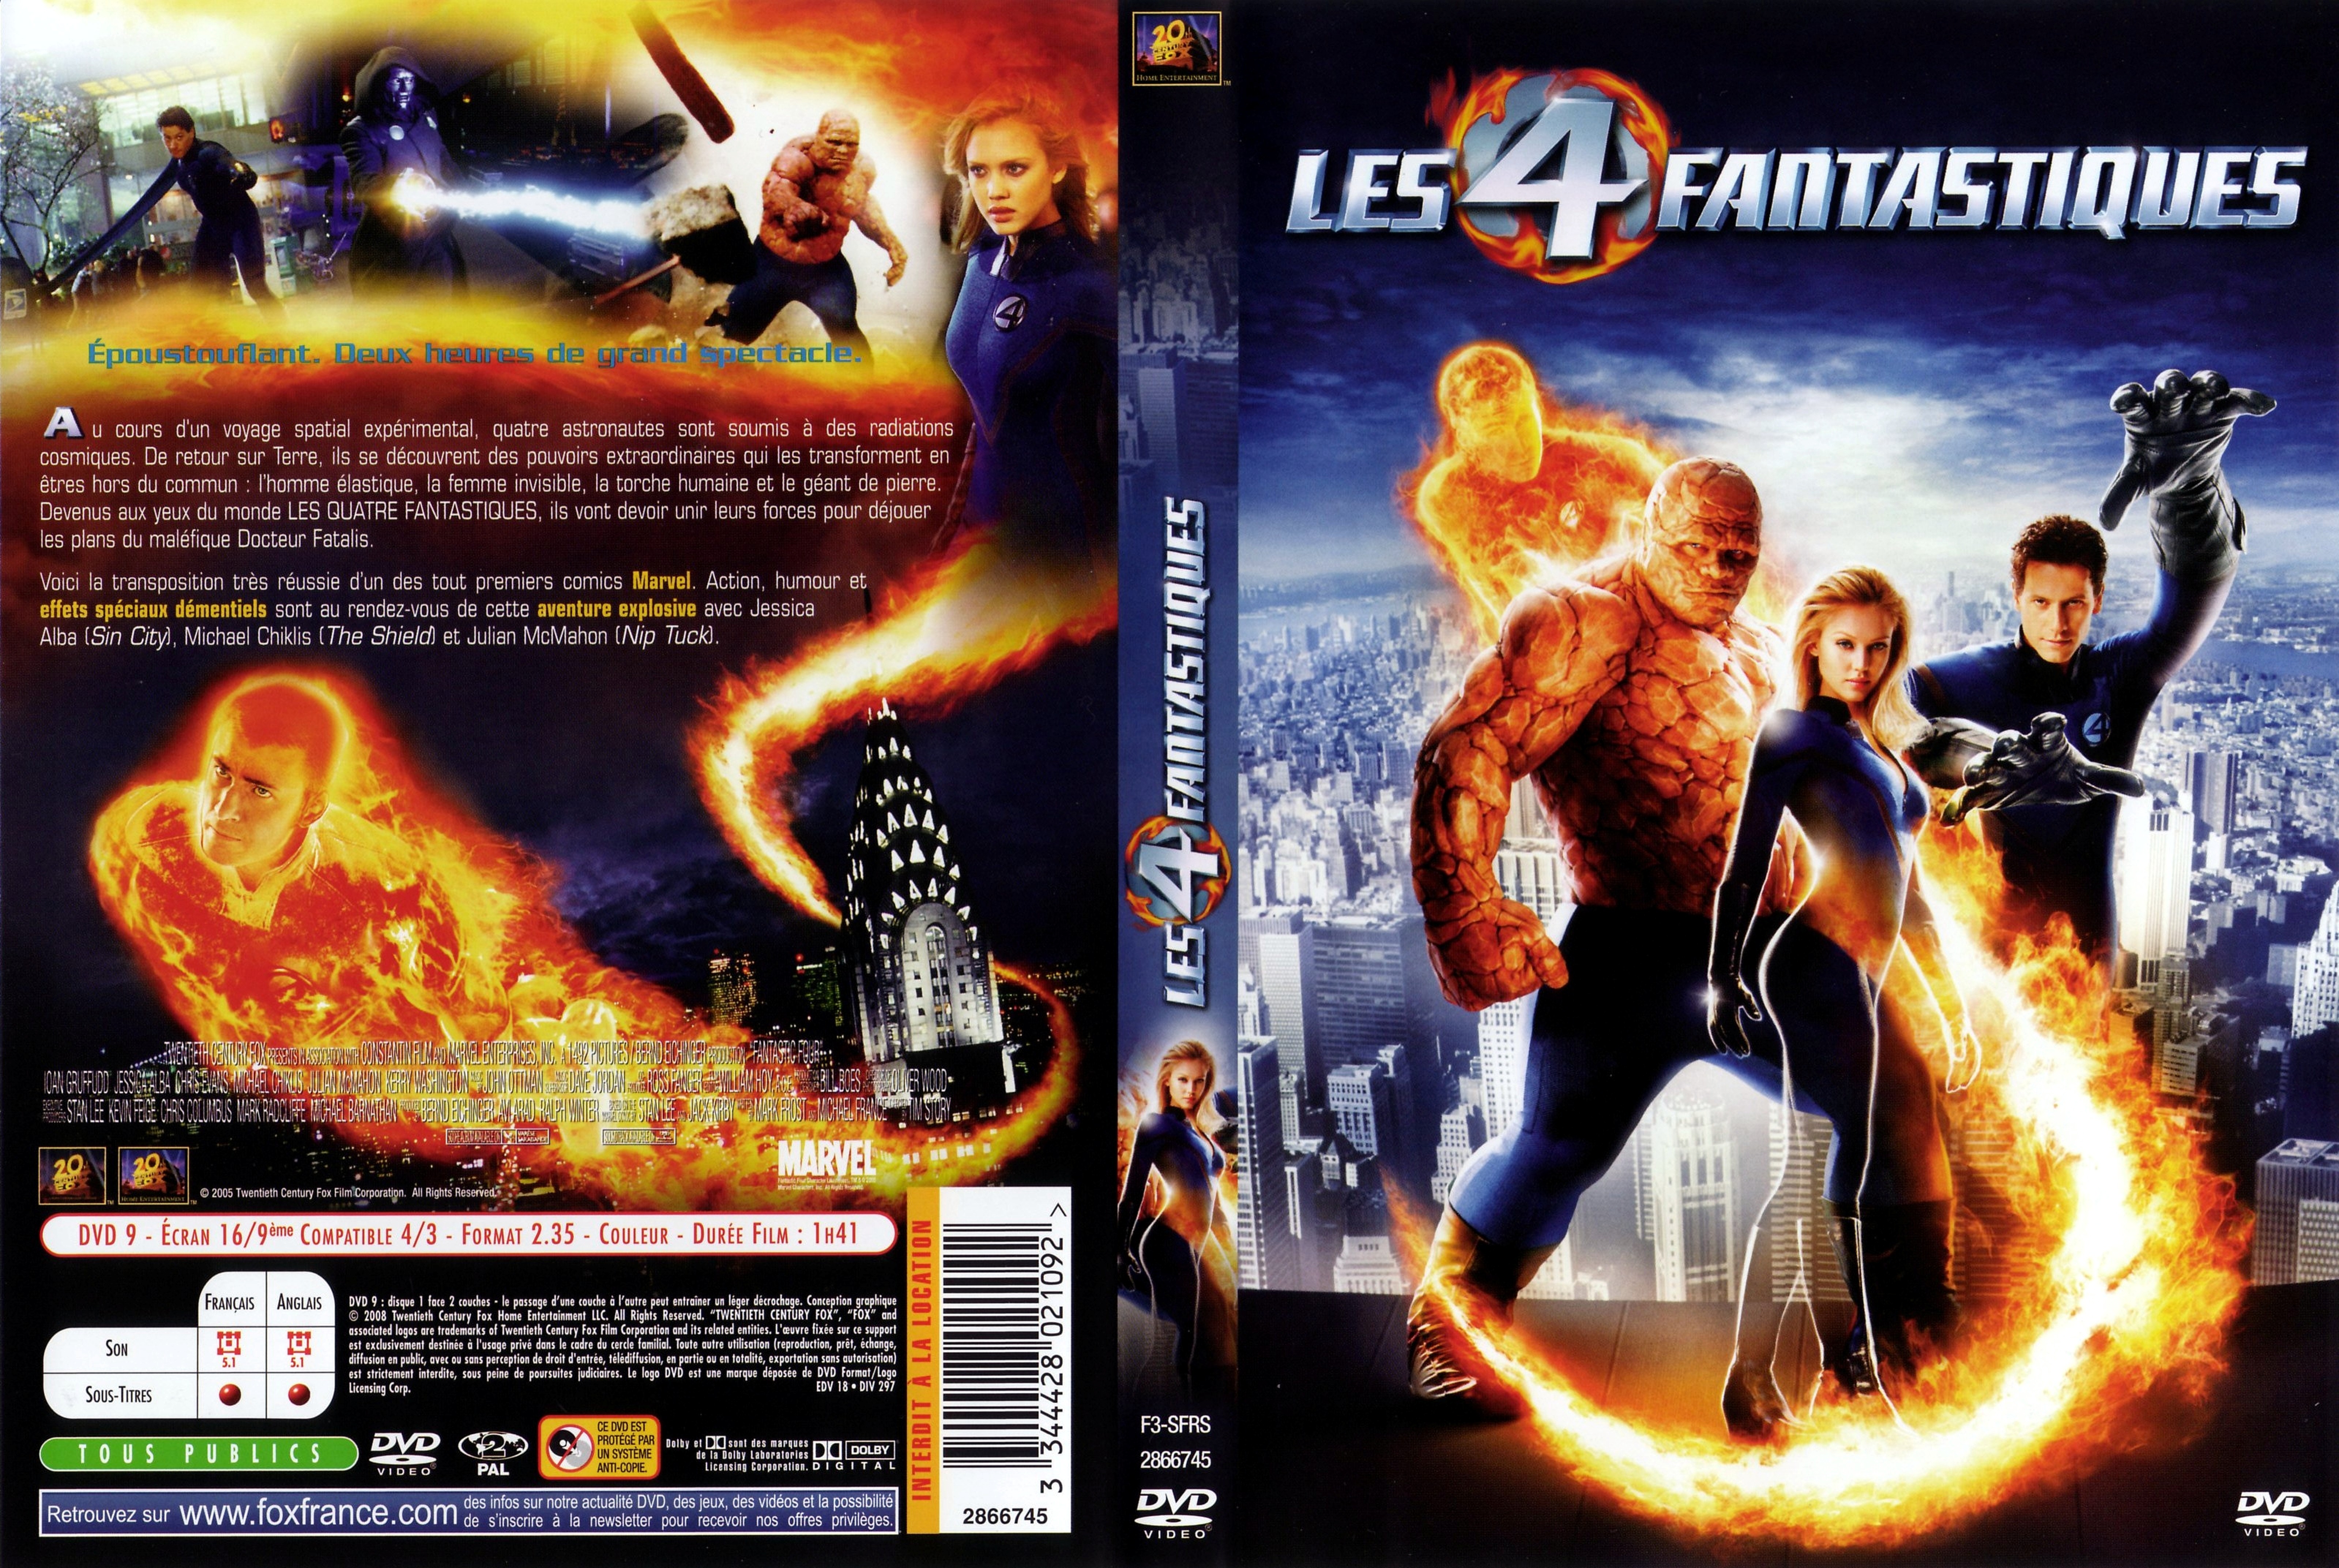 Jaquette DVD Les 4 fantastiques v4